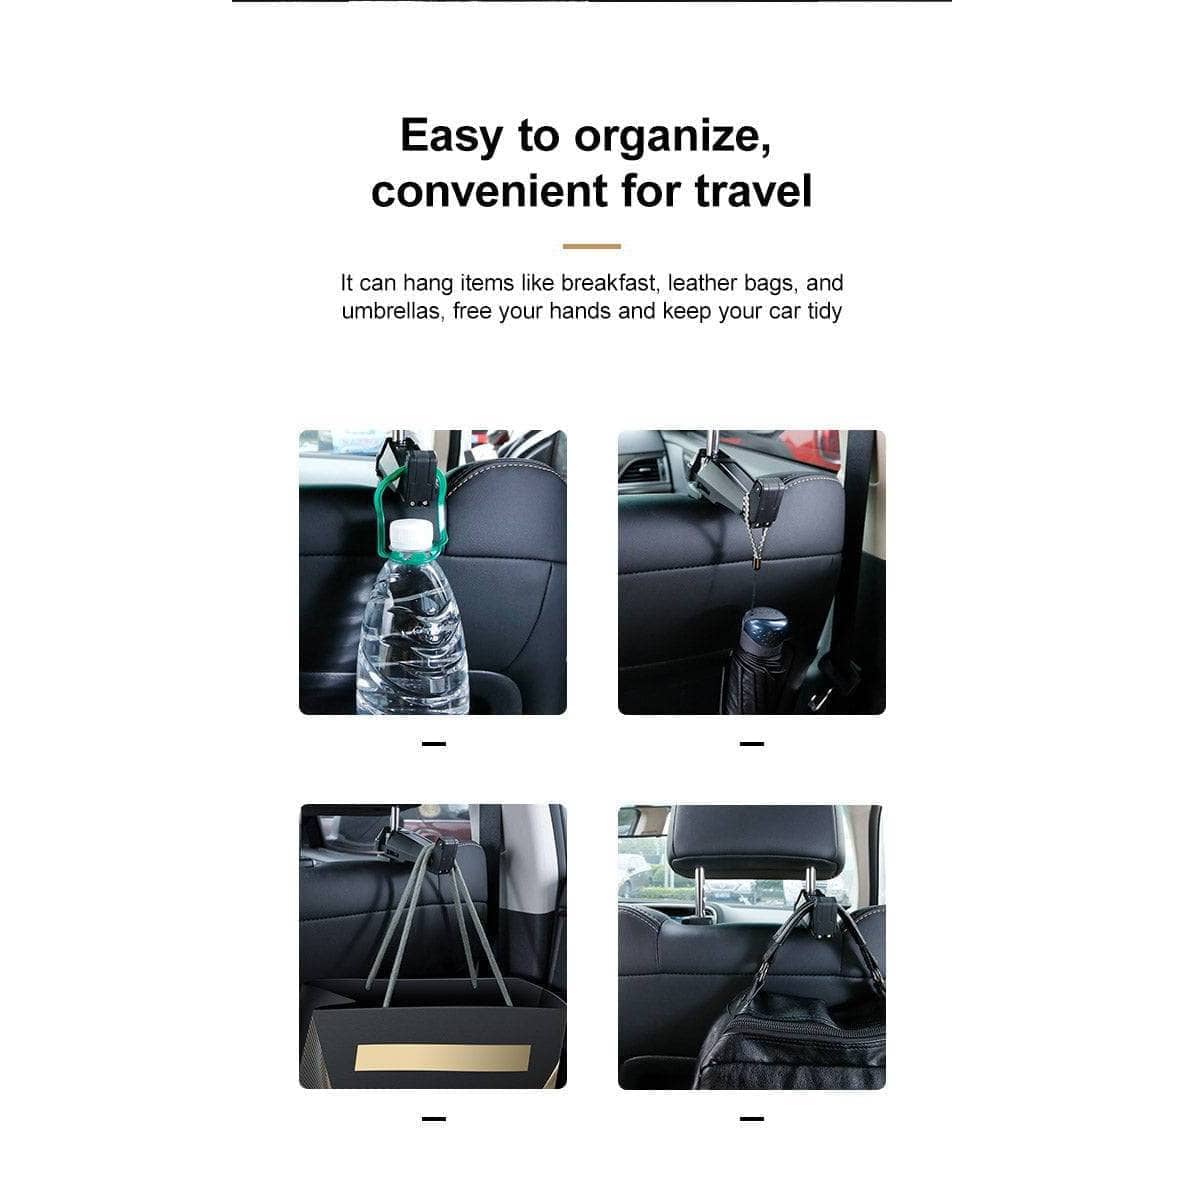 Baseus Car Phone Holder Headrest Hooks for iPhone Huawei Back Seat Hook Car Mount Holder Fastener Seat Back Organizer Bag Hanger-Mobile Phone Stands-Baseus-www.PhoneGuy.com.au